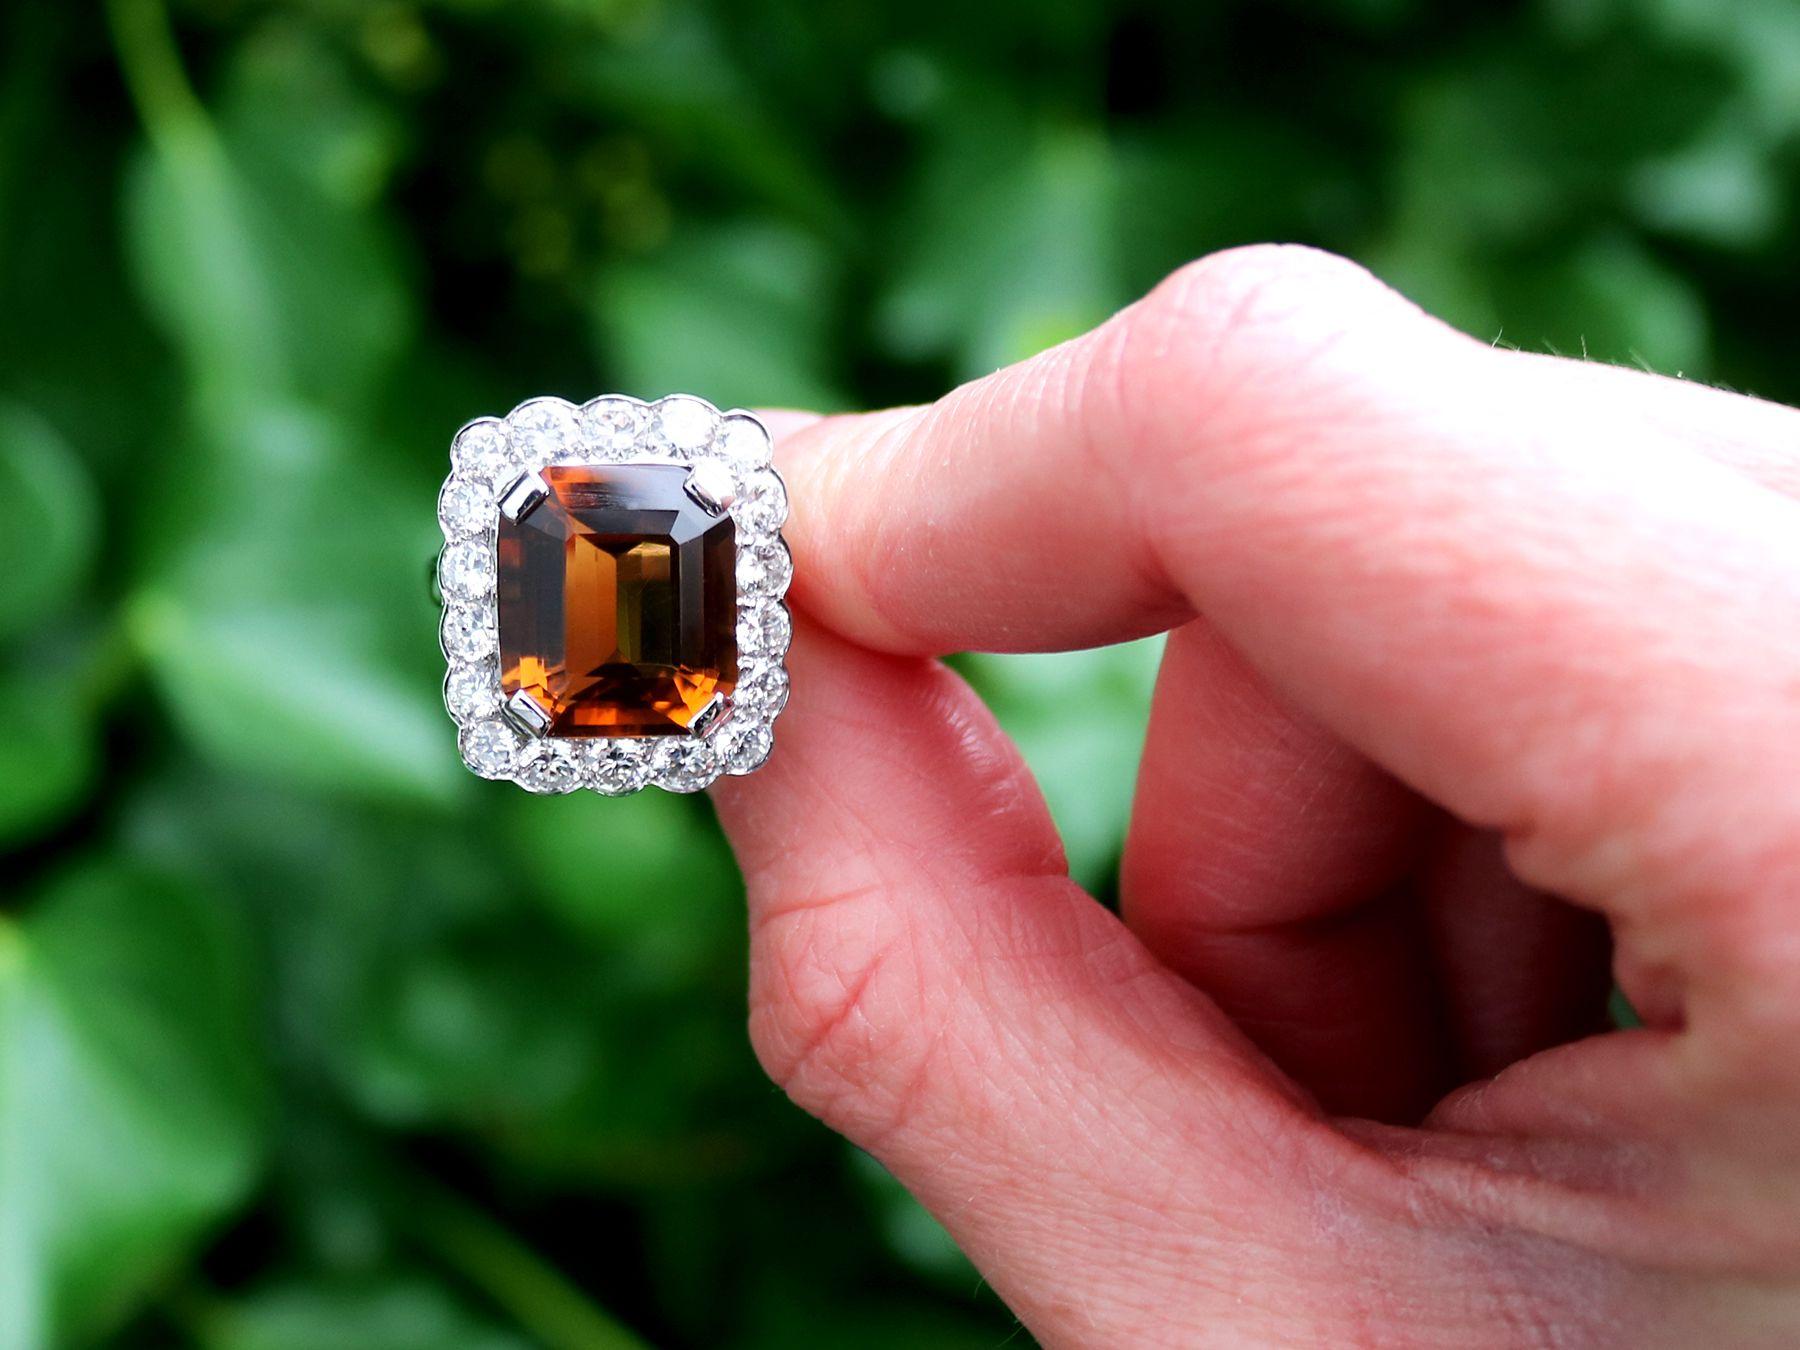 Ein atemberaubender, feiner und beeindruckender Ring aus Platin mit 6,98 Karat Zitrin und 2,54 Karat Diamant; Teil unserer vielfältigen Vintage-Schmuck- und Nachlassschmuck-Kollektionen.

Dieser atemberaubende, edle und beeindruckende